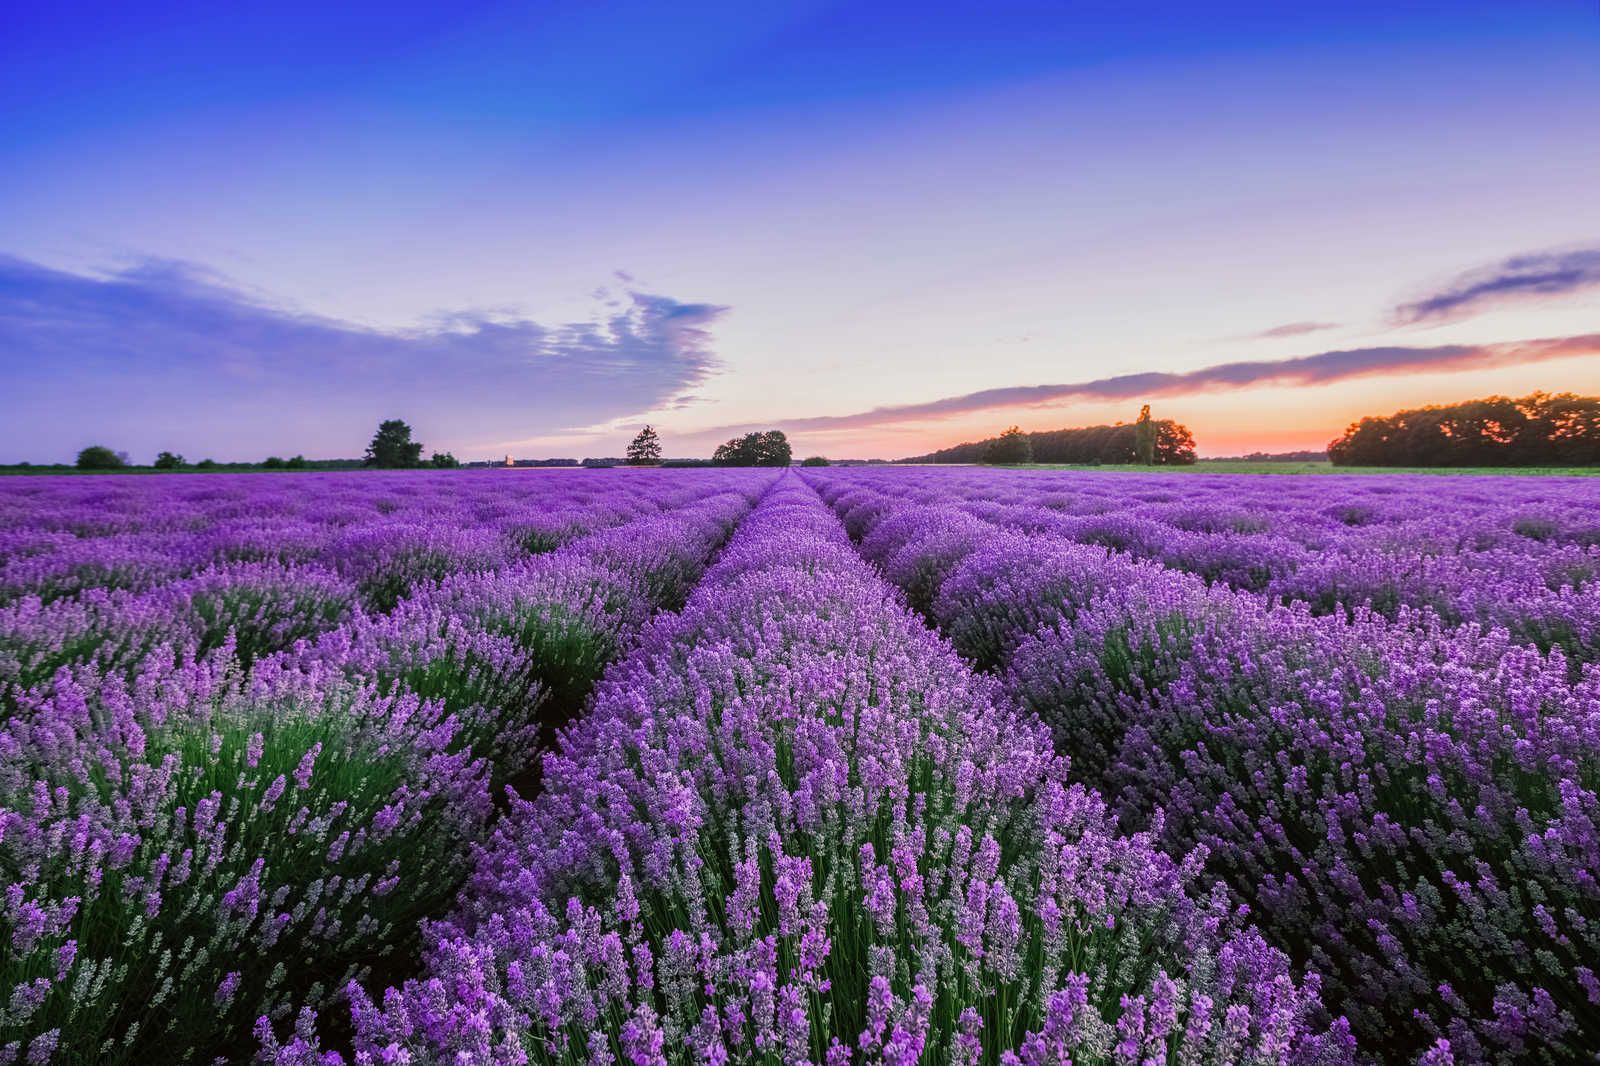             Landscape Canvas Picture with Lavender Field - 1.20 m x 0.80 m
        